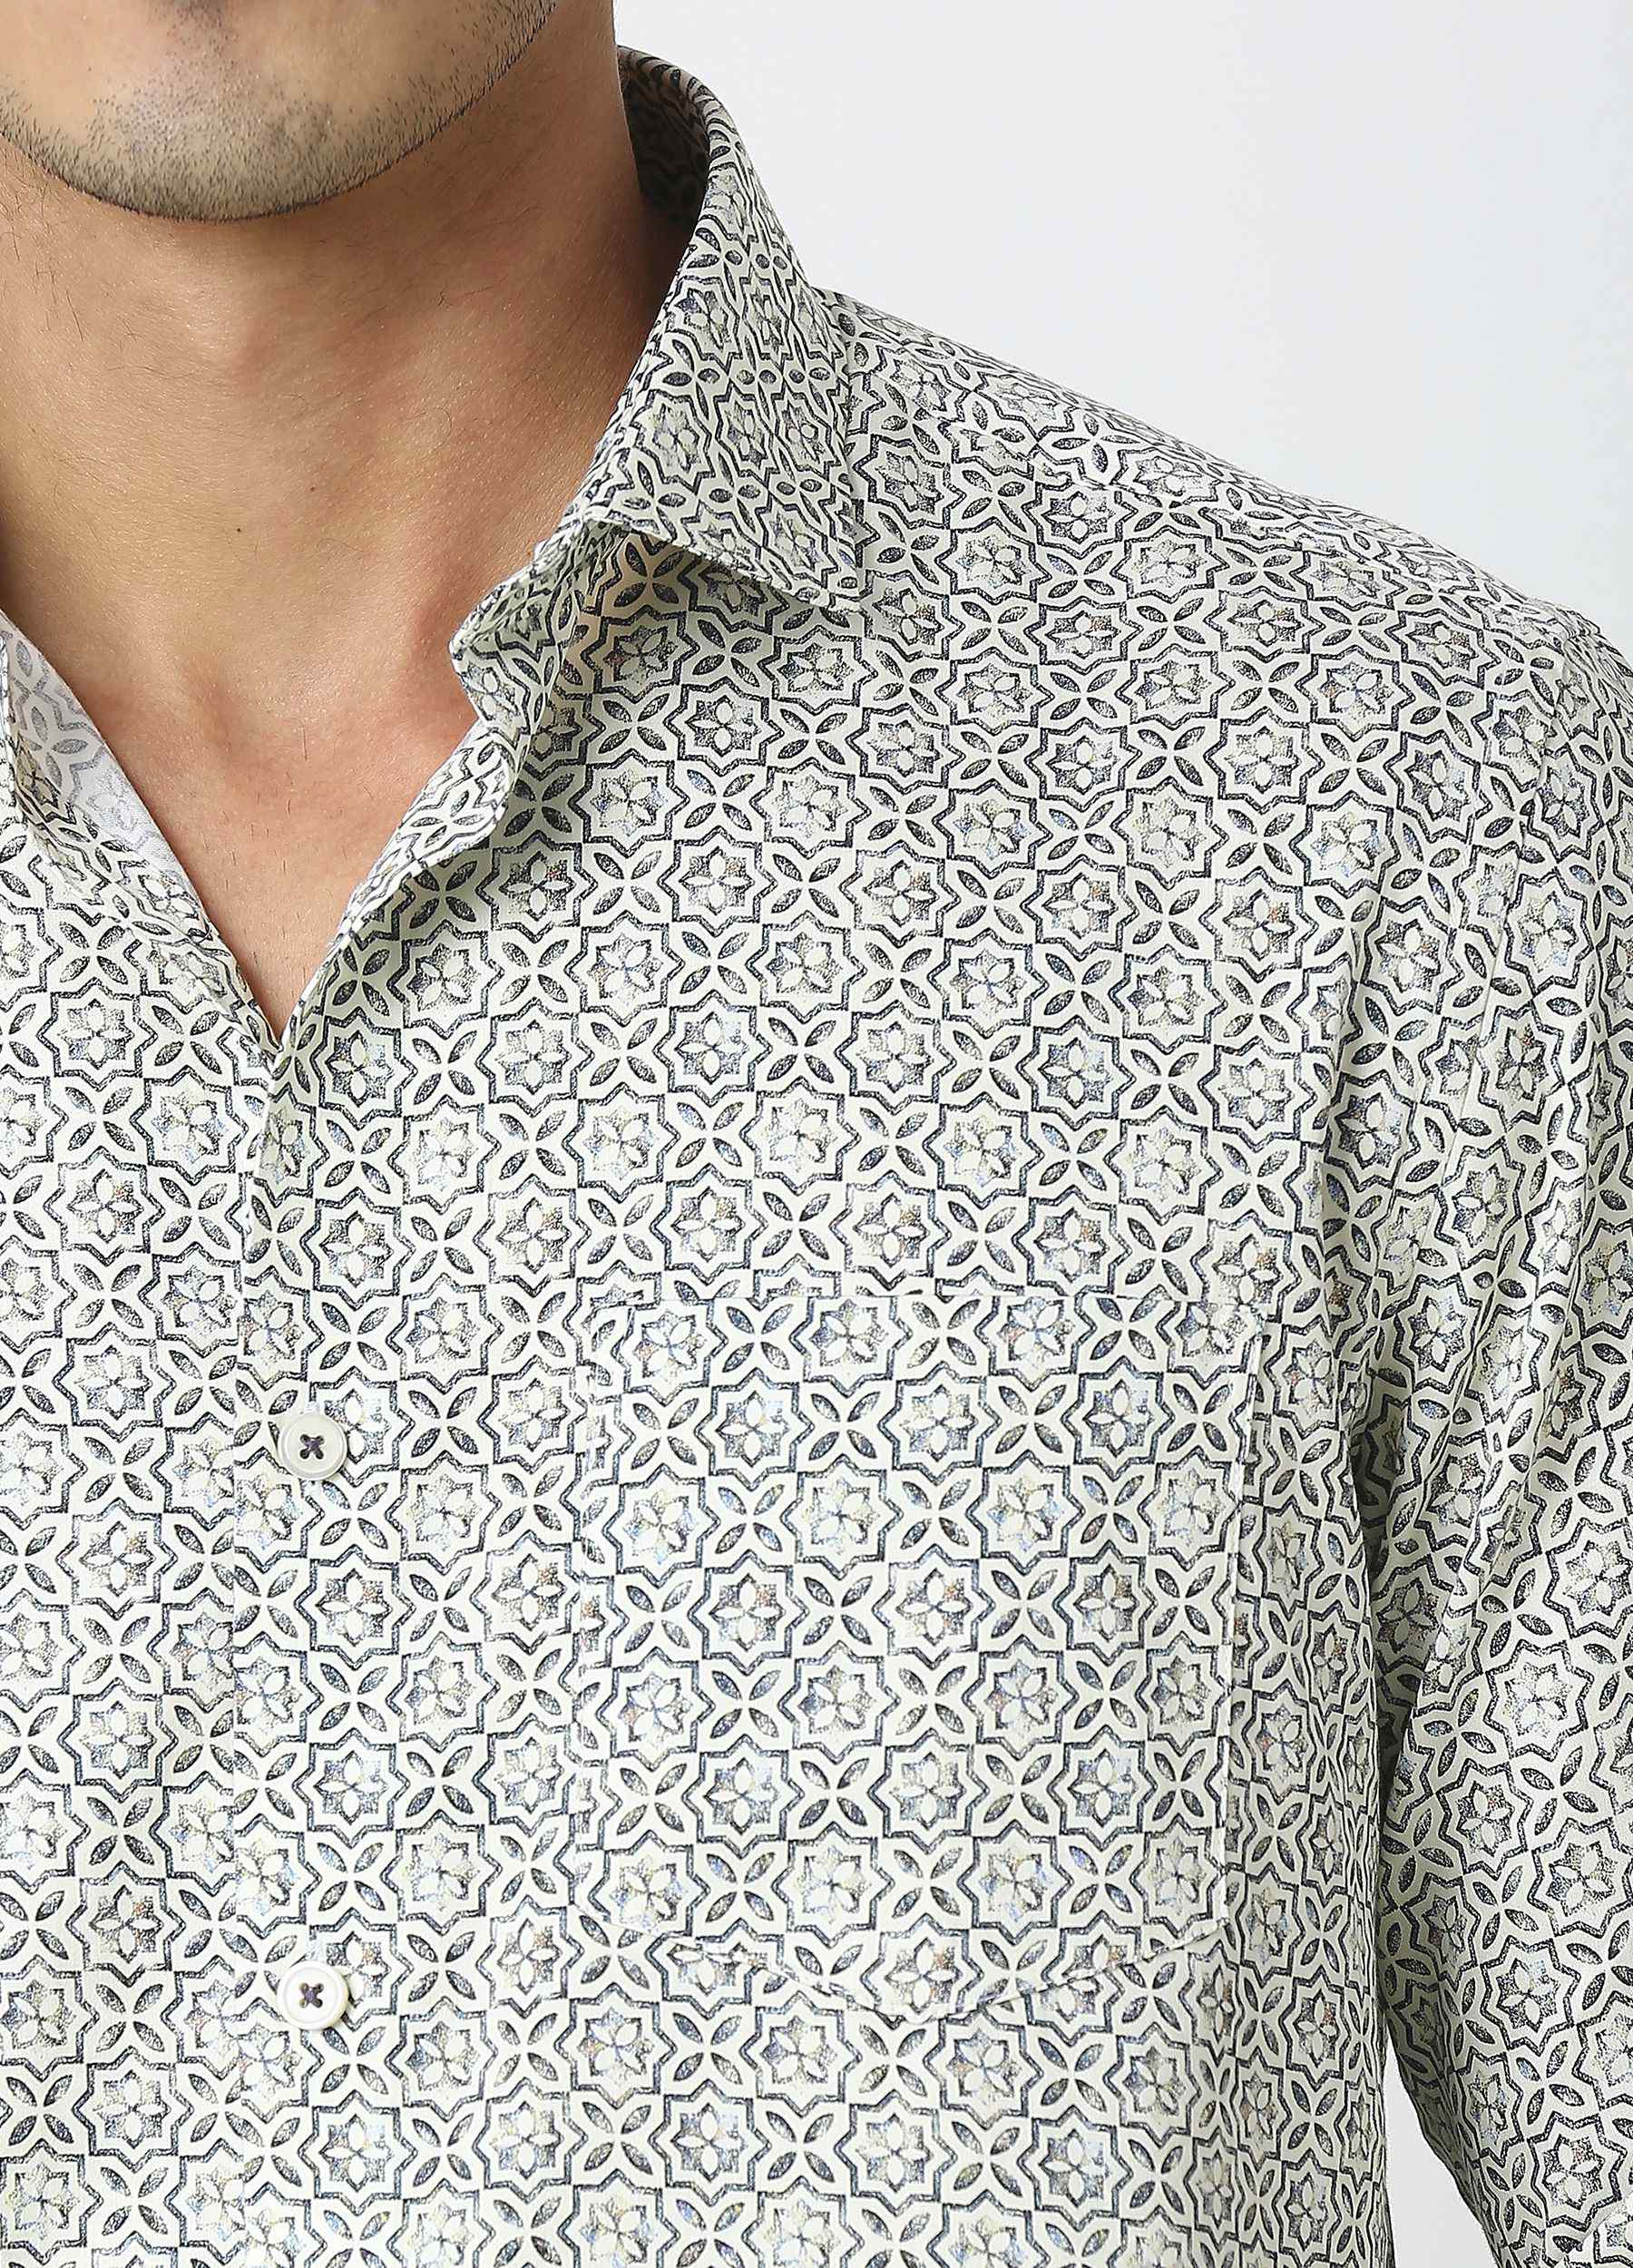 Coral: Satin Print Shirt - Eggshell White